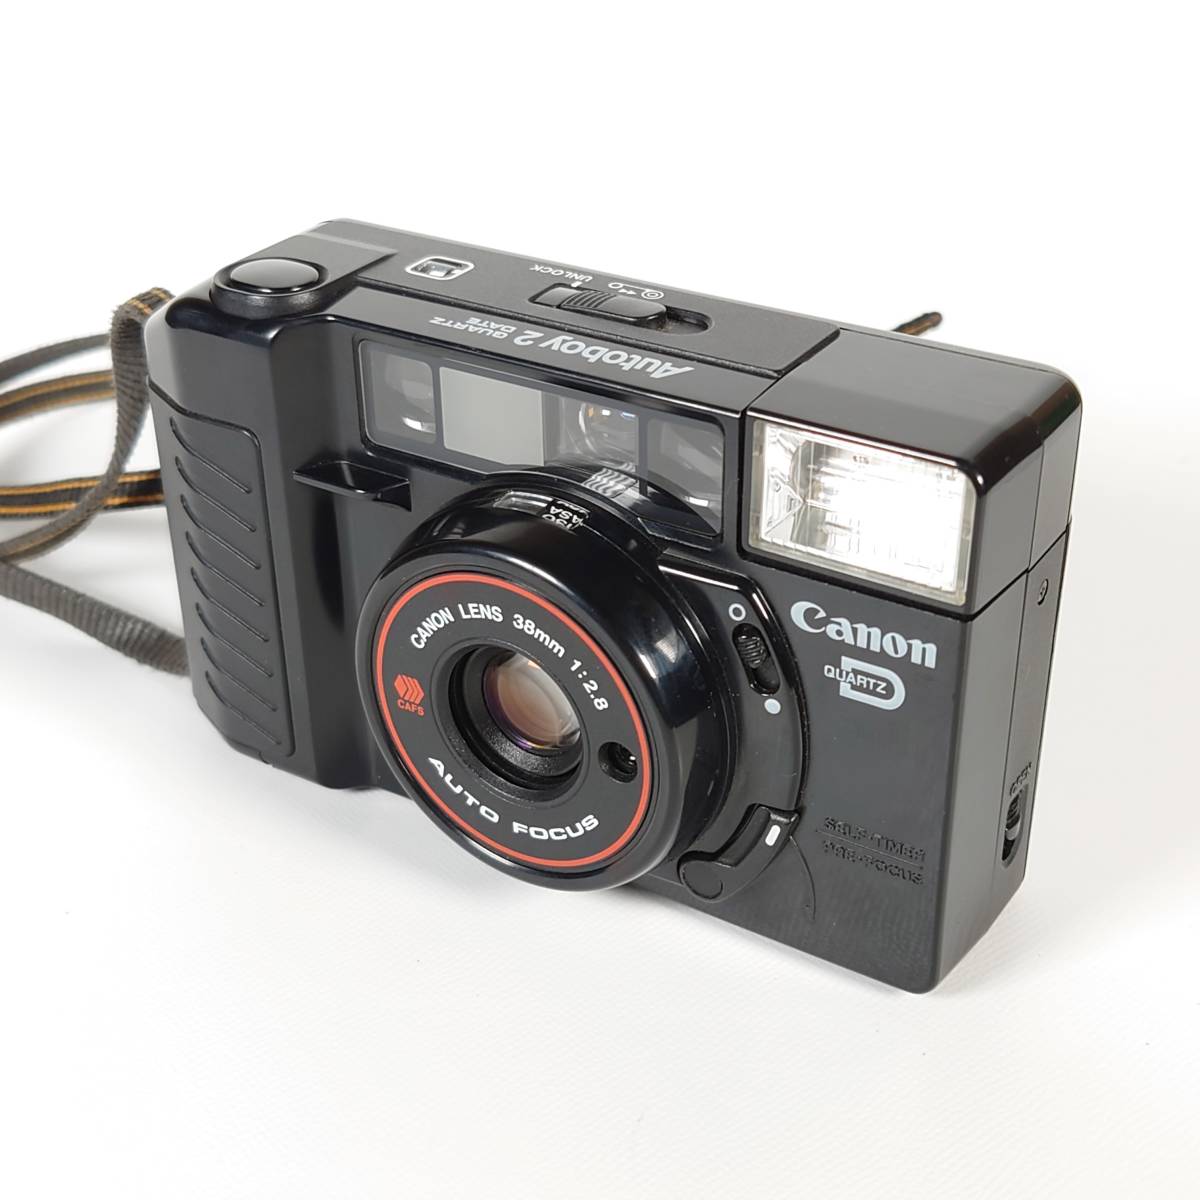 ストロボ・シャッターOK Canon Autoboy 2 QUARTZ DATE コンパクトフィルムカメラ 38mm F2.8 キヤノン オートボーイ 現状品_画像2